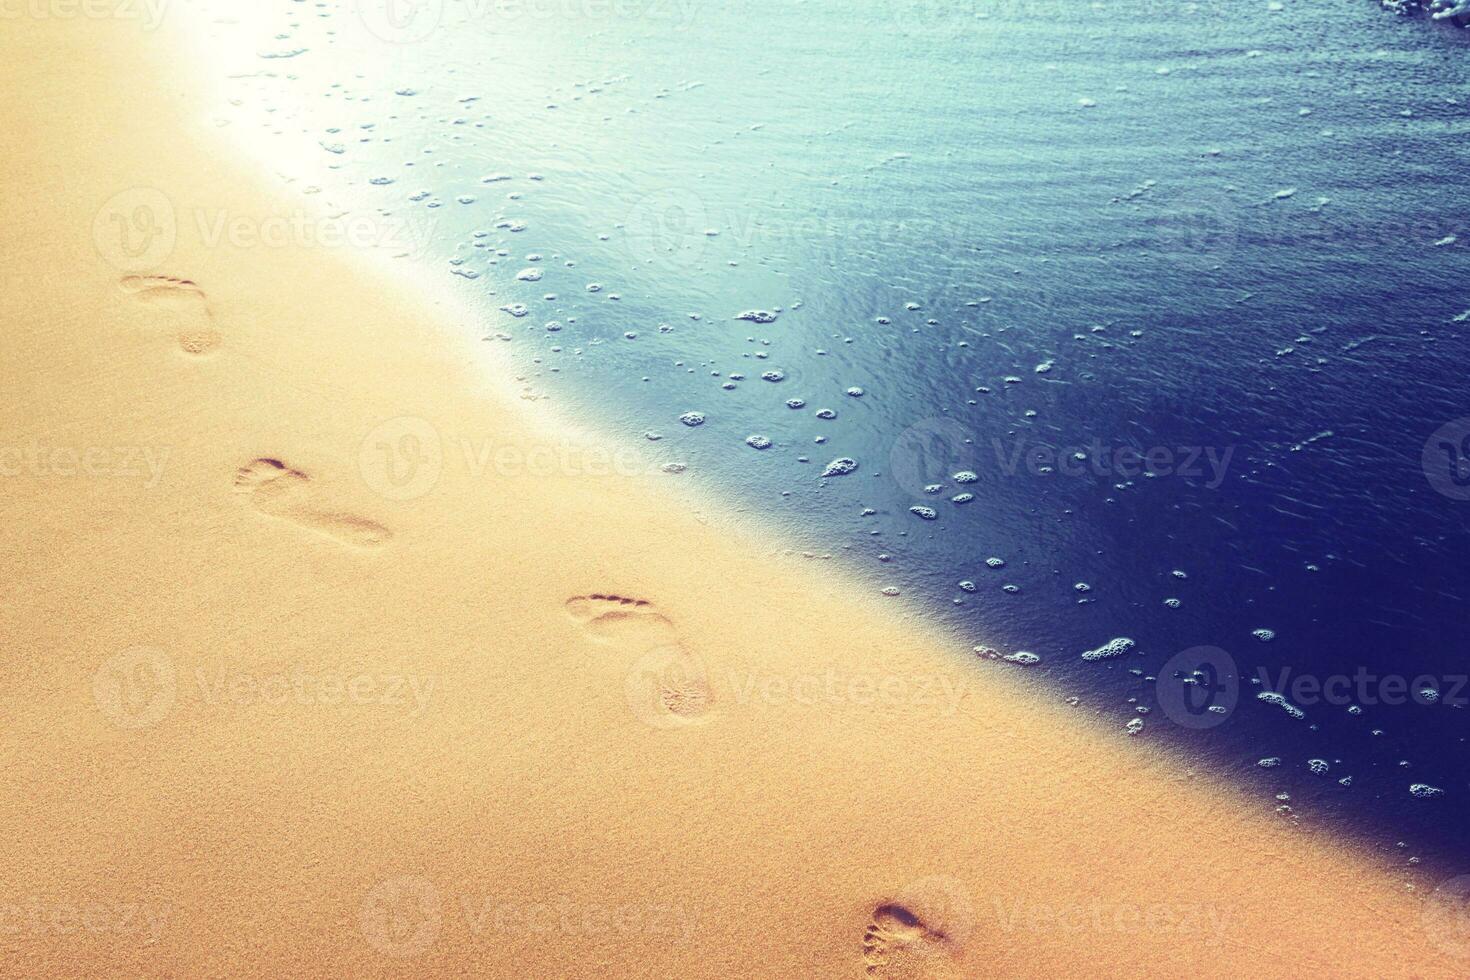 marchant sur la plage, laissant des empreintes de pas dans le sable. photo